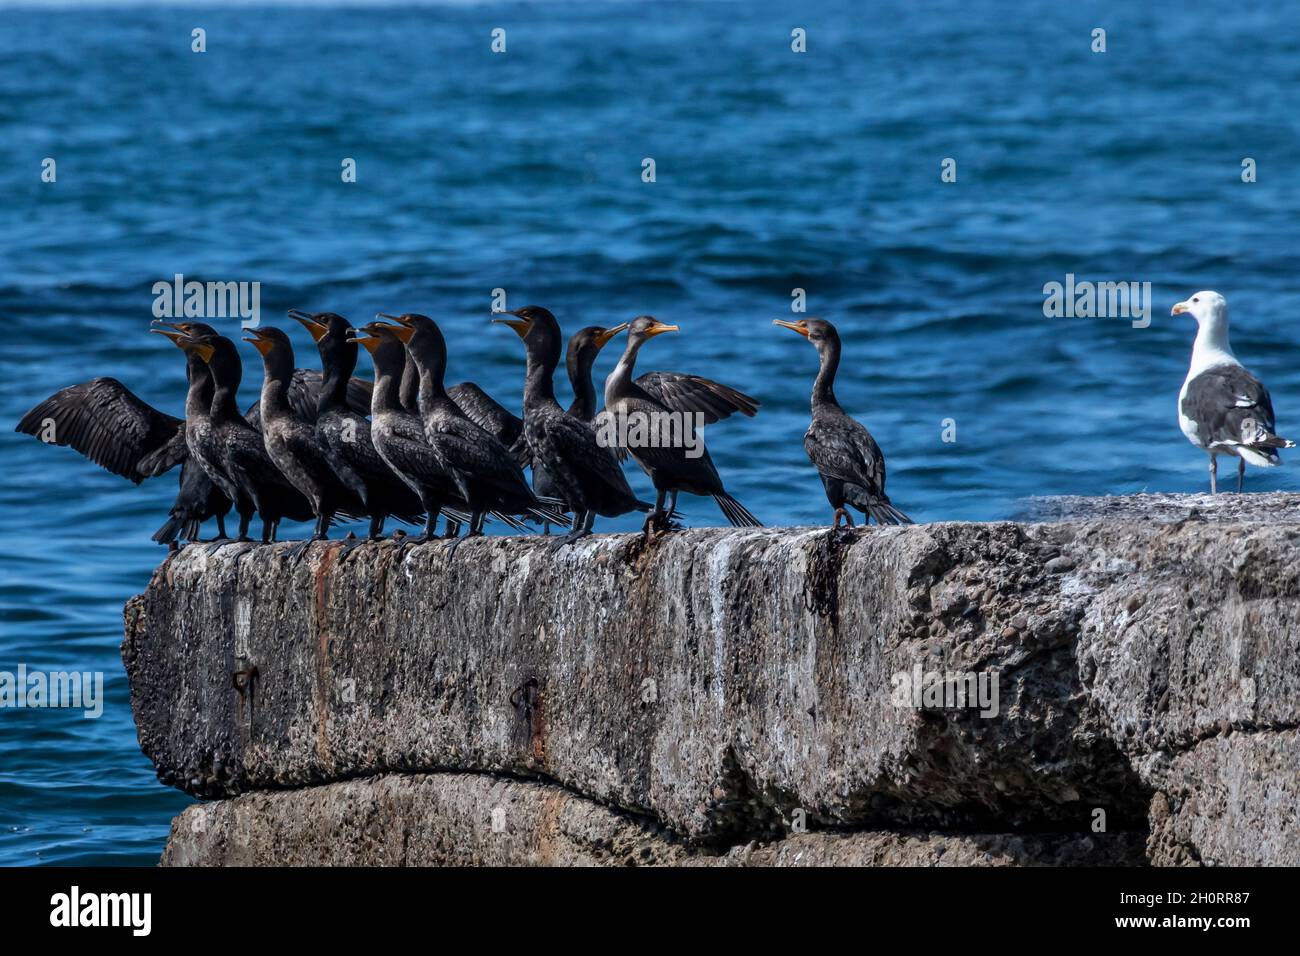 Mouette debout à côté d'une rangée de cormorans sur une roche côtière, Canada Banque D'Images